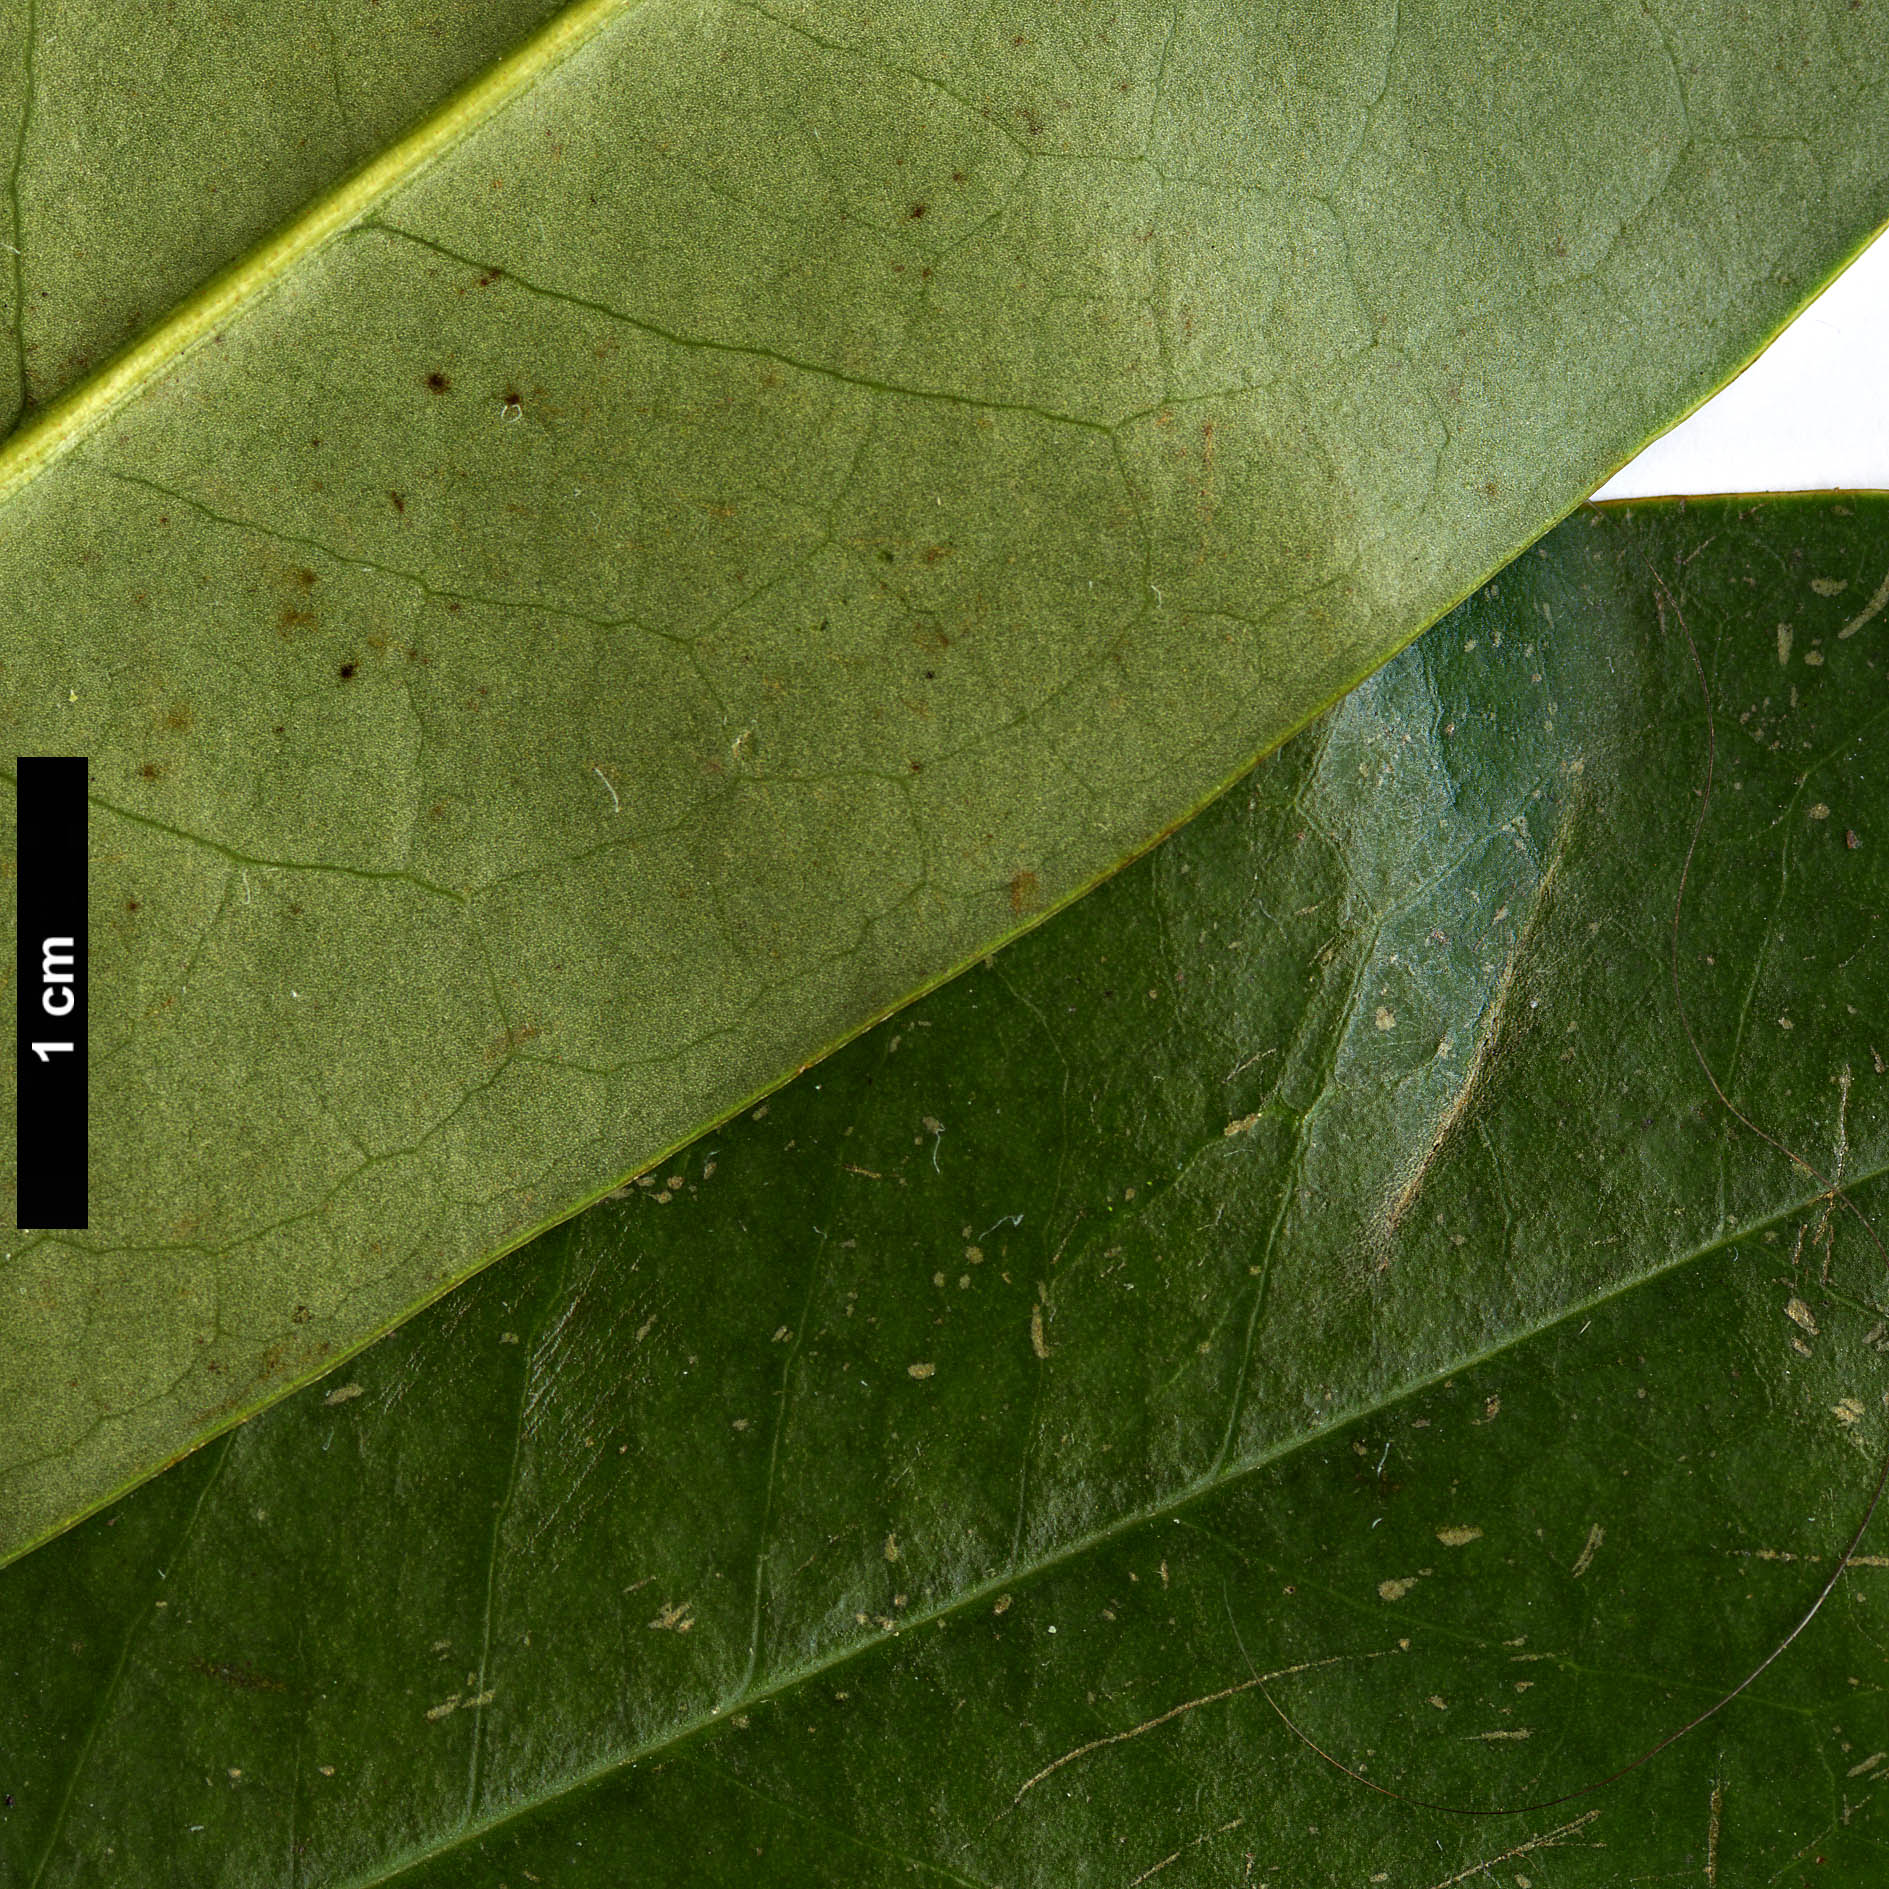 High resolution image: Family: Magnoliaceae - Genus: Magnolia - Taxon: insignis 